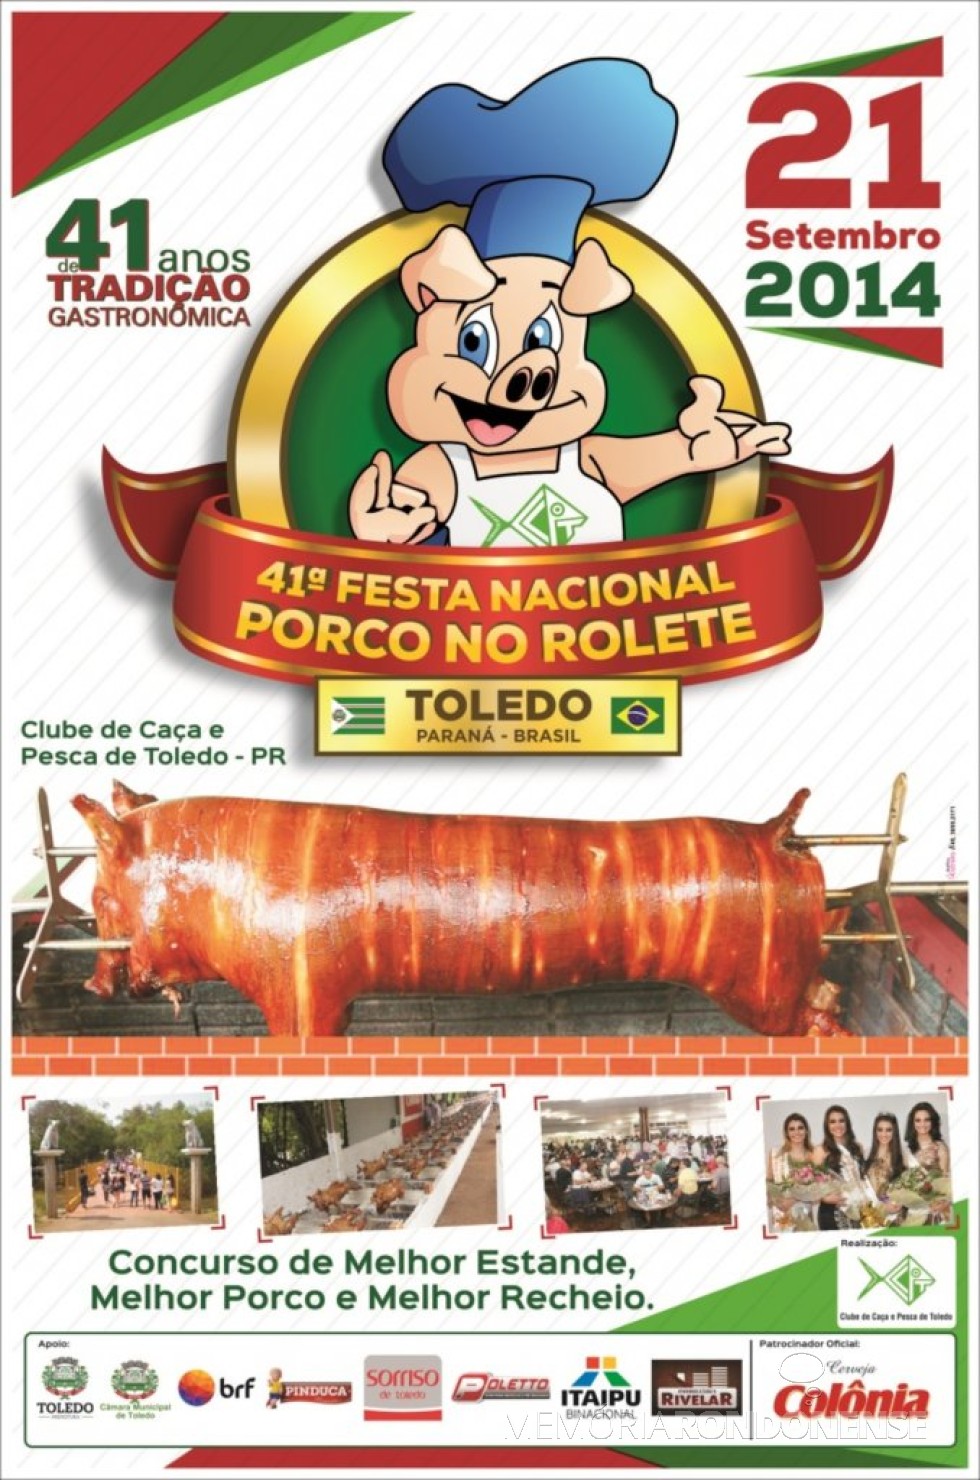 || Cartaz convite para a 41ª Festa Nacional do Porco no Rolete de Toledo, em setembro de 2014.
Imagem: Acervo Prefeitura Municipal de Toledo - FOTO 14 - 